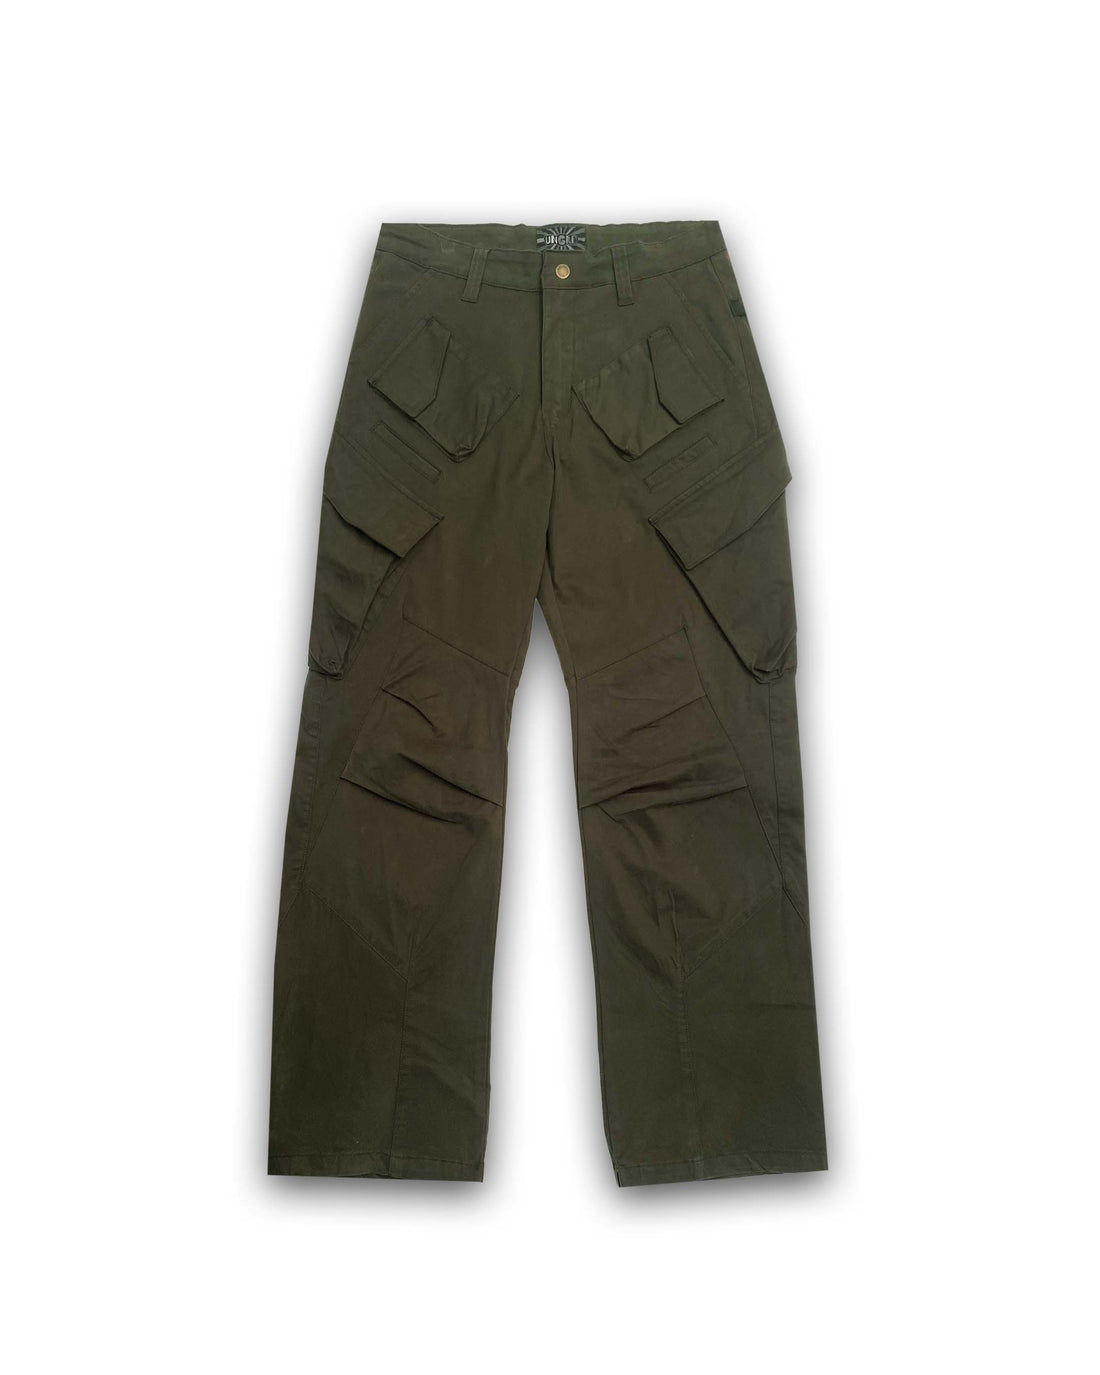 Hexa Pocket Pants (Classic Green)